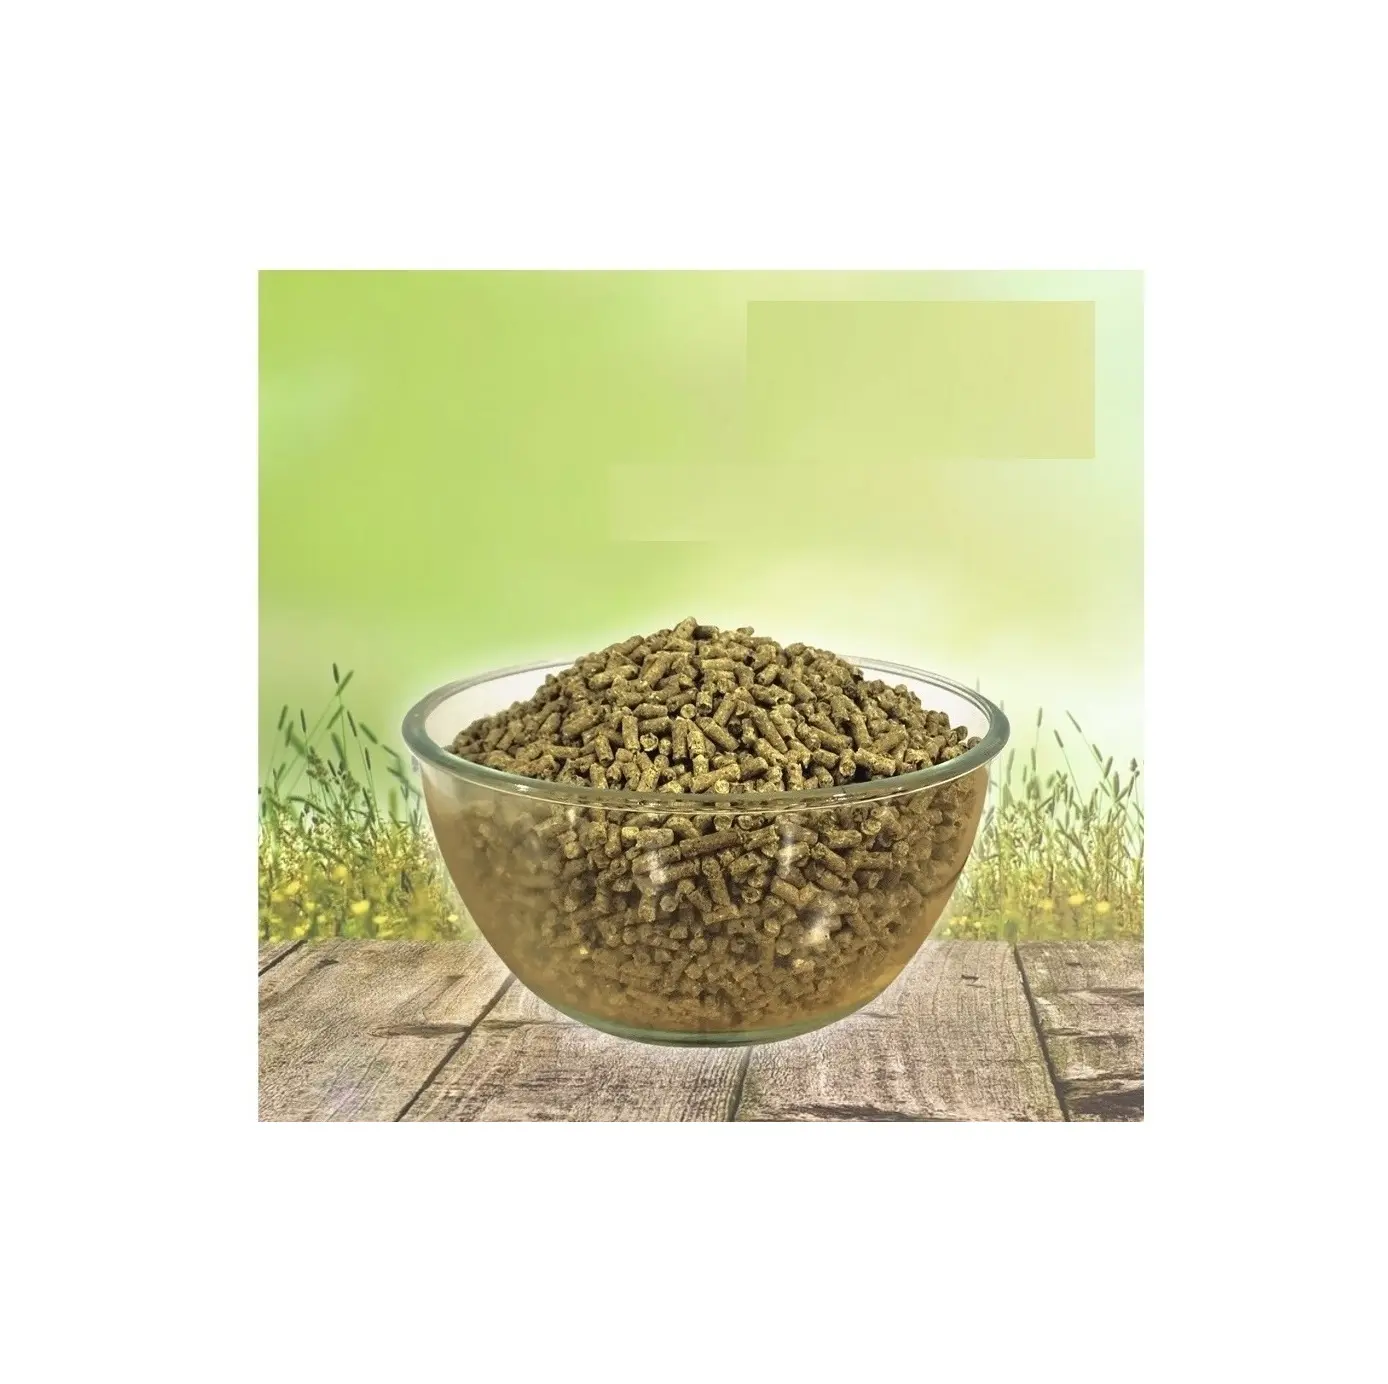 Хи протеин касторовая мука гранулы органическое удобрение для выращивания касторового, доступное по недорогой цене из Индии